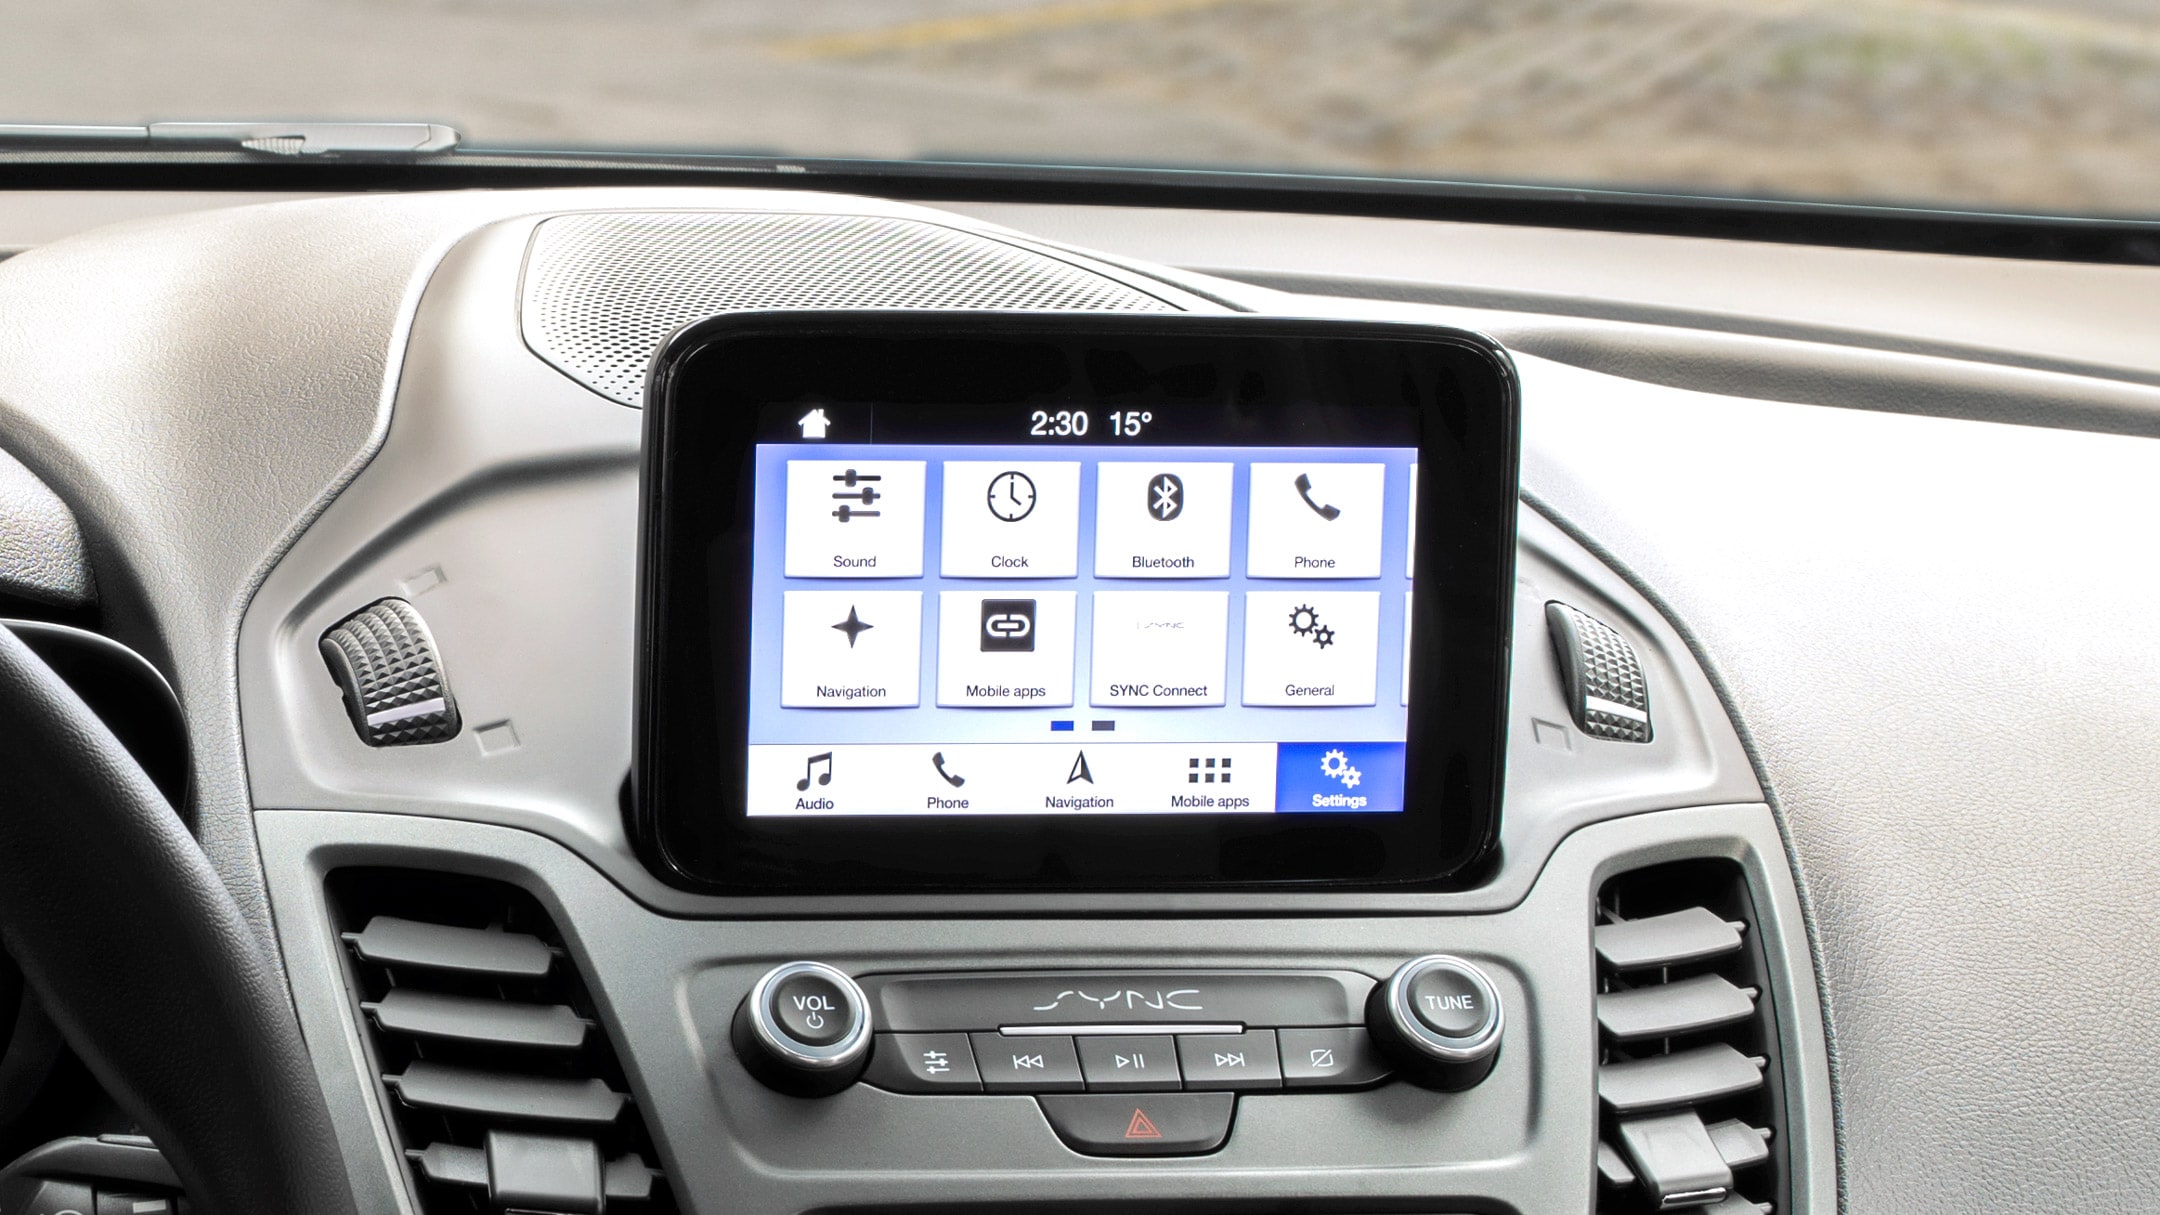 System obsługi głosowej Ford SYNC 3 z ekranem dotykowym.